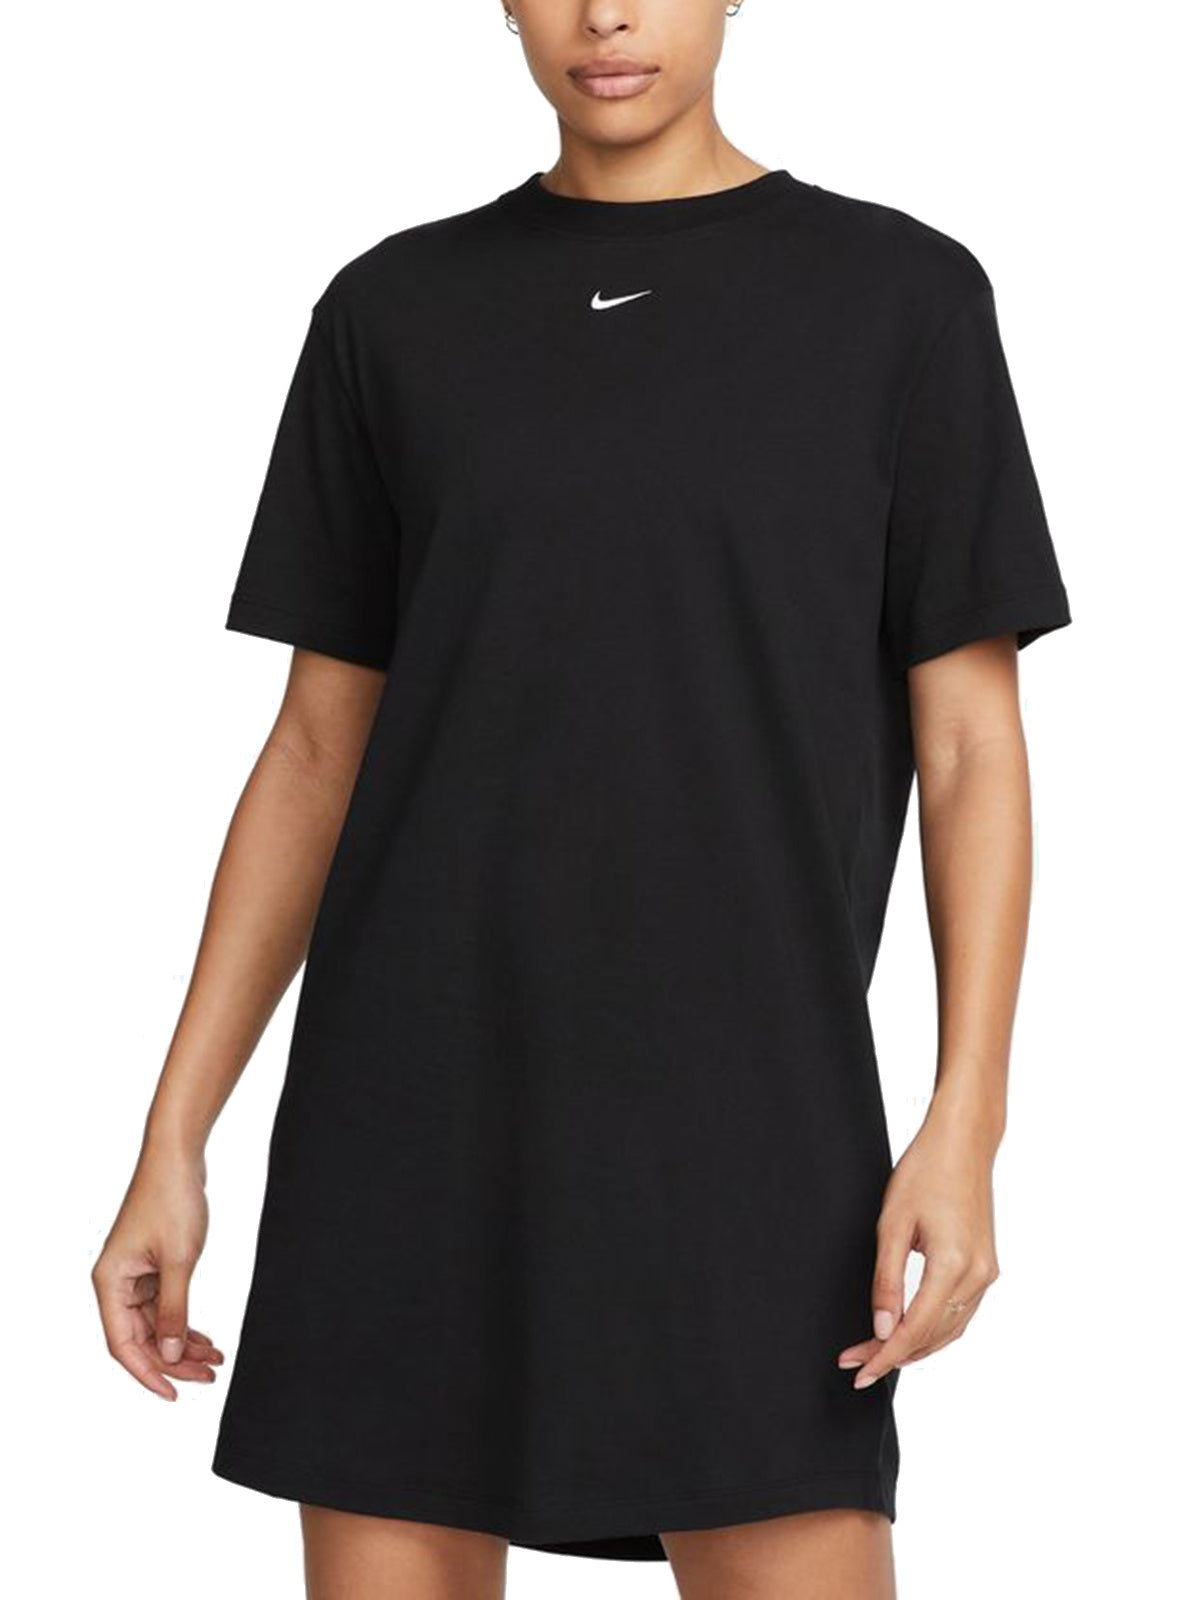 Vestiti casual Donna Nike - Abito T-Shirt Oversize Sportswear Chill Knit - Nero